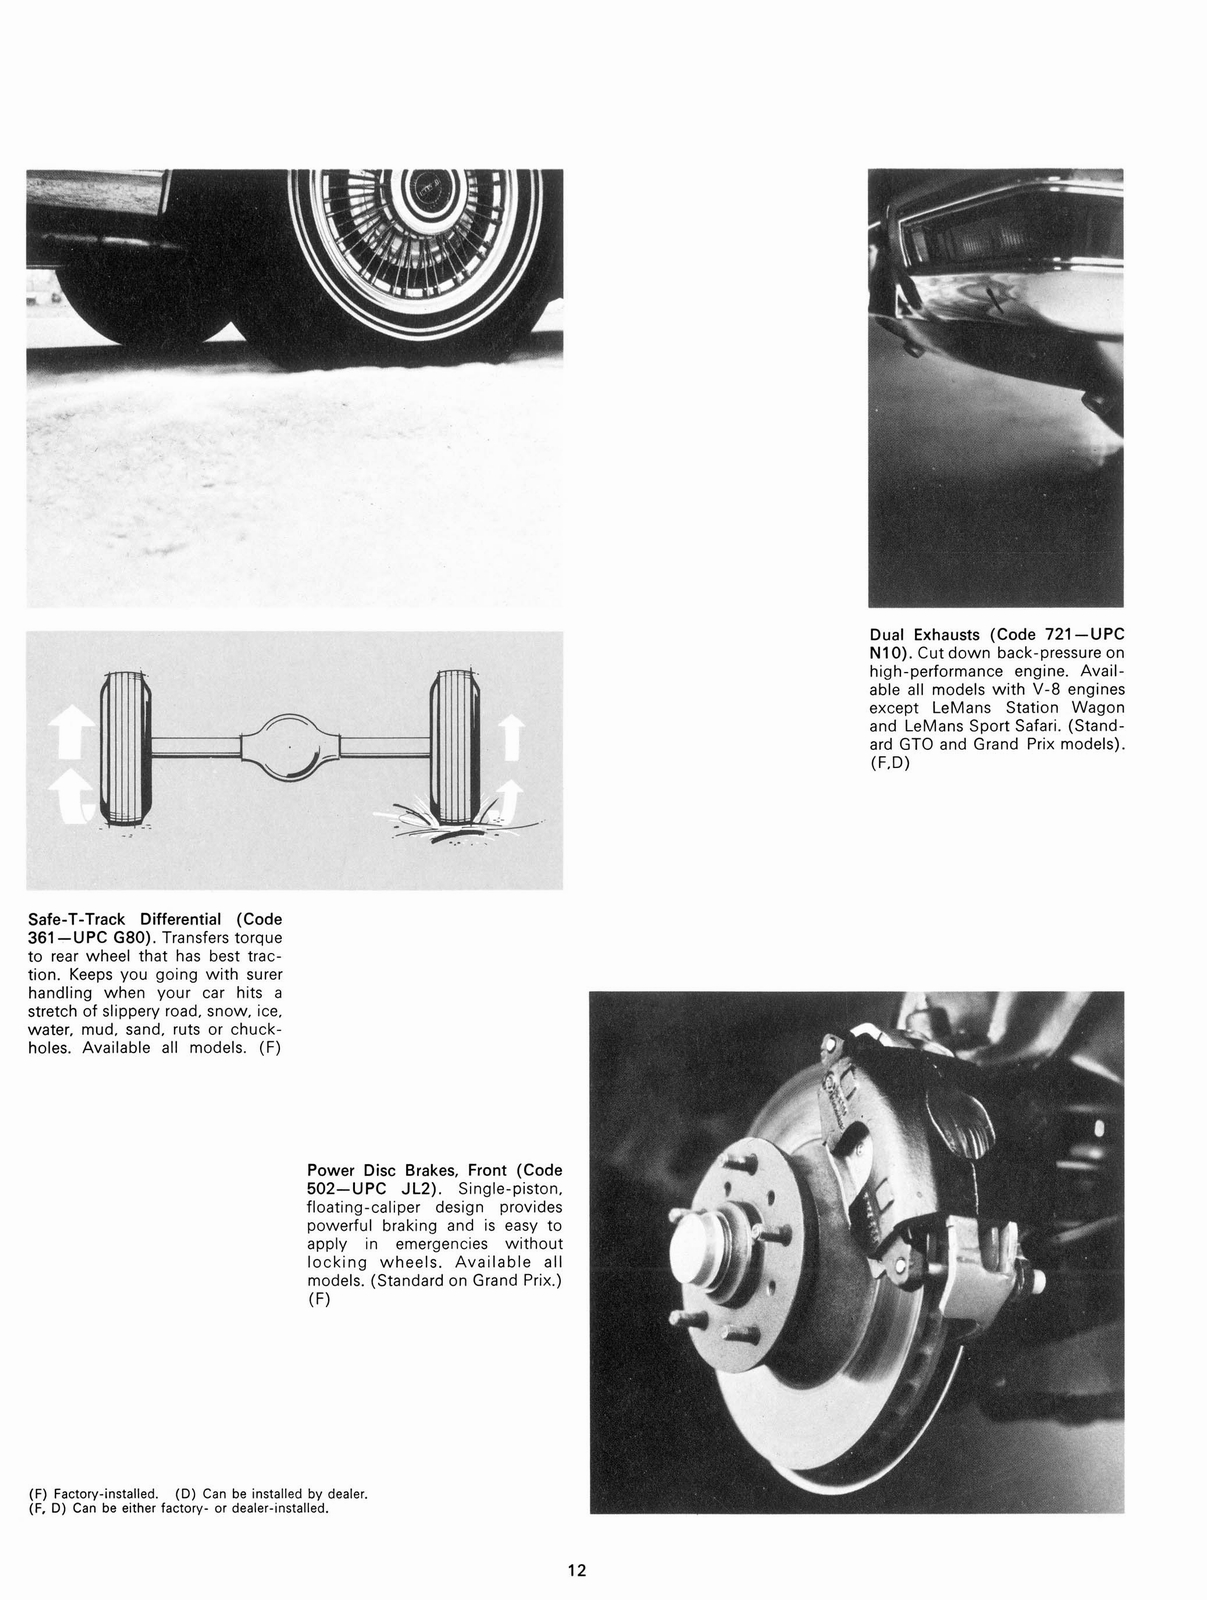 n_1970 Pontiac Accessories-12.jpg